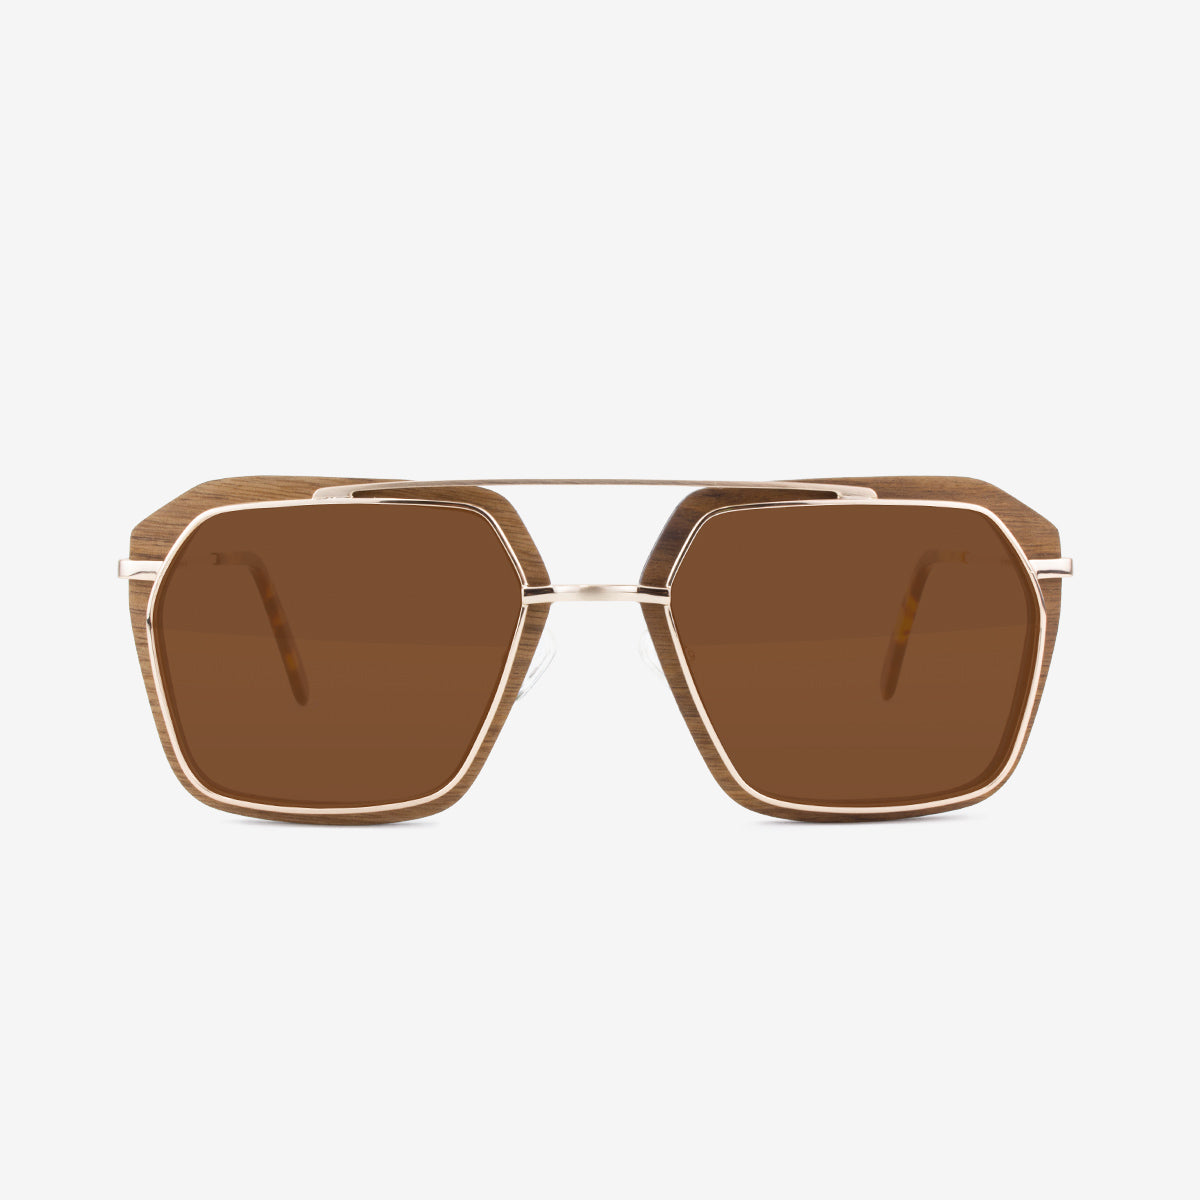 Bal Harbour - Metal & Wood Sunglasses